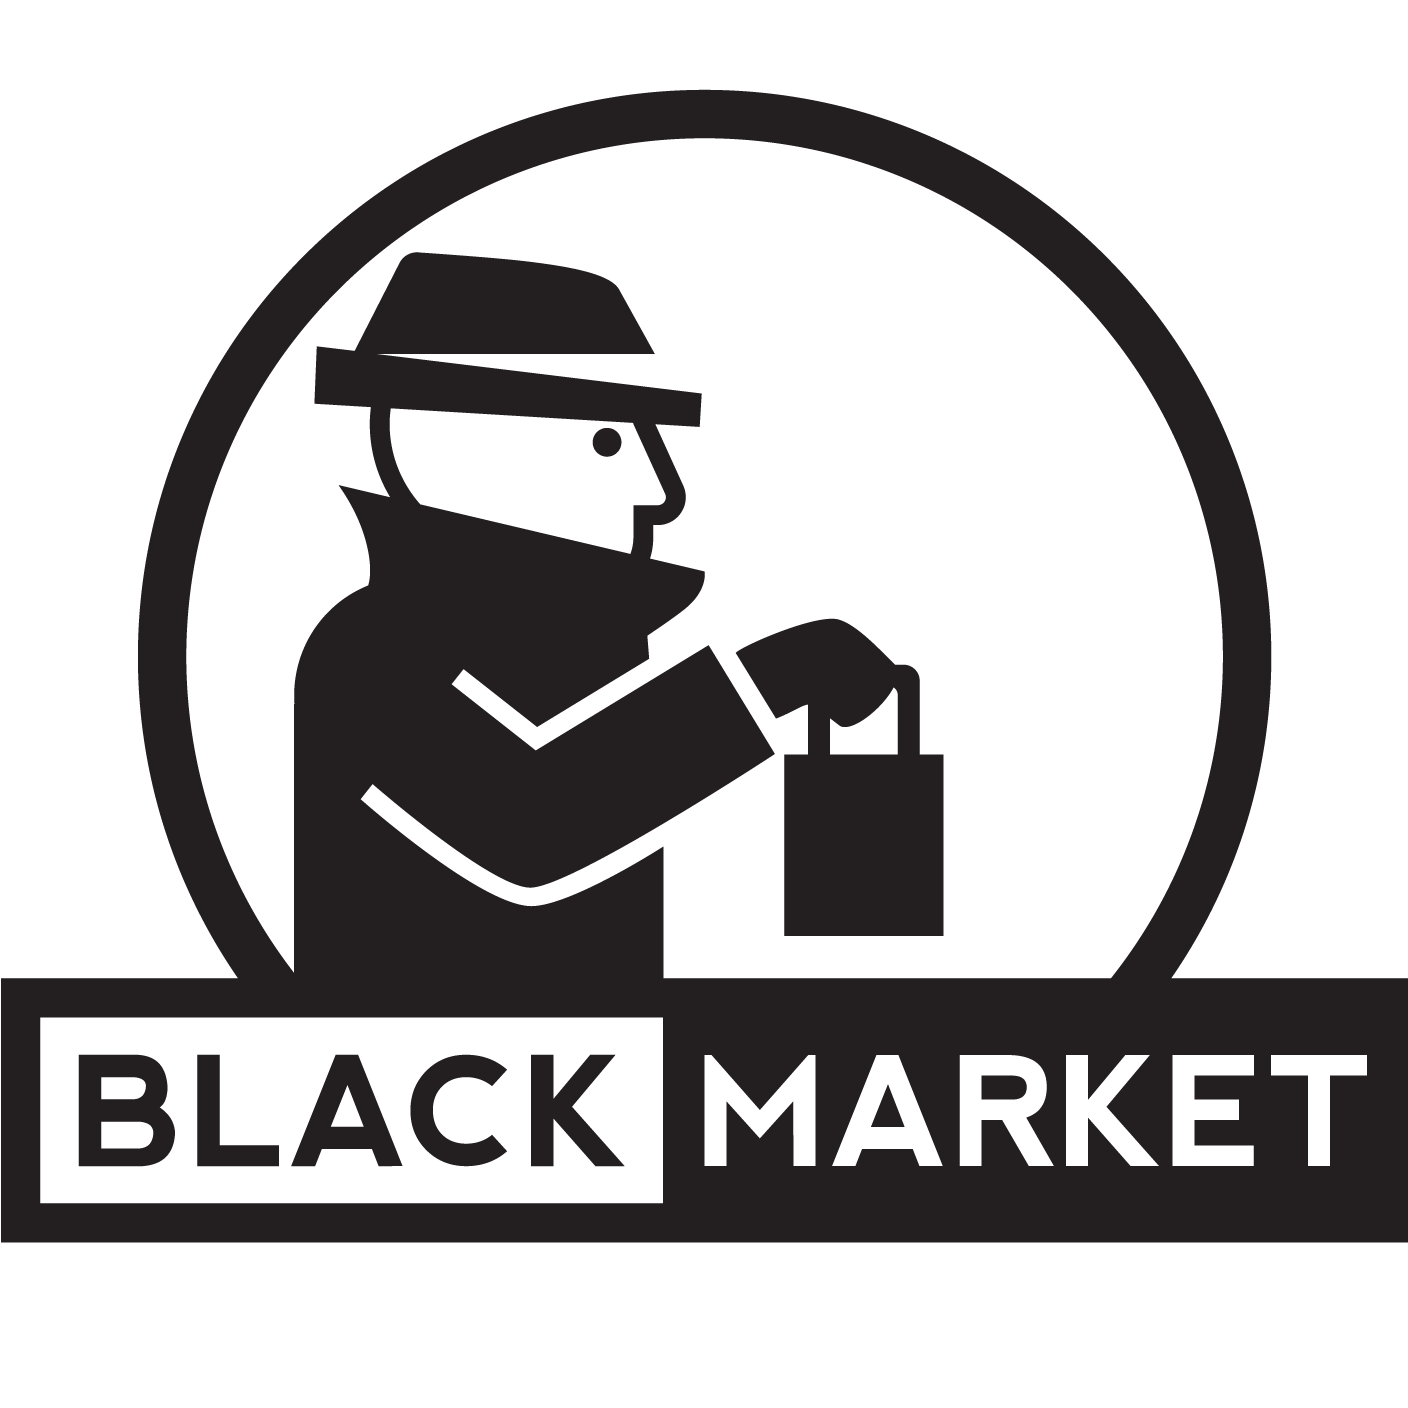 Черный рынок тексты. Черный рынок. Черный Маркет. Черный рынок эмблема. "Black Market"+"черный рынок".